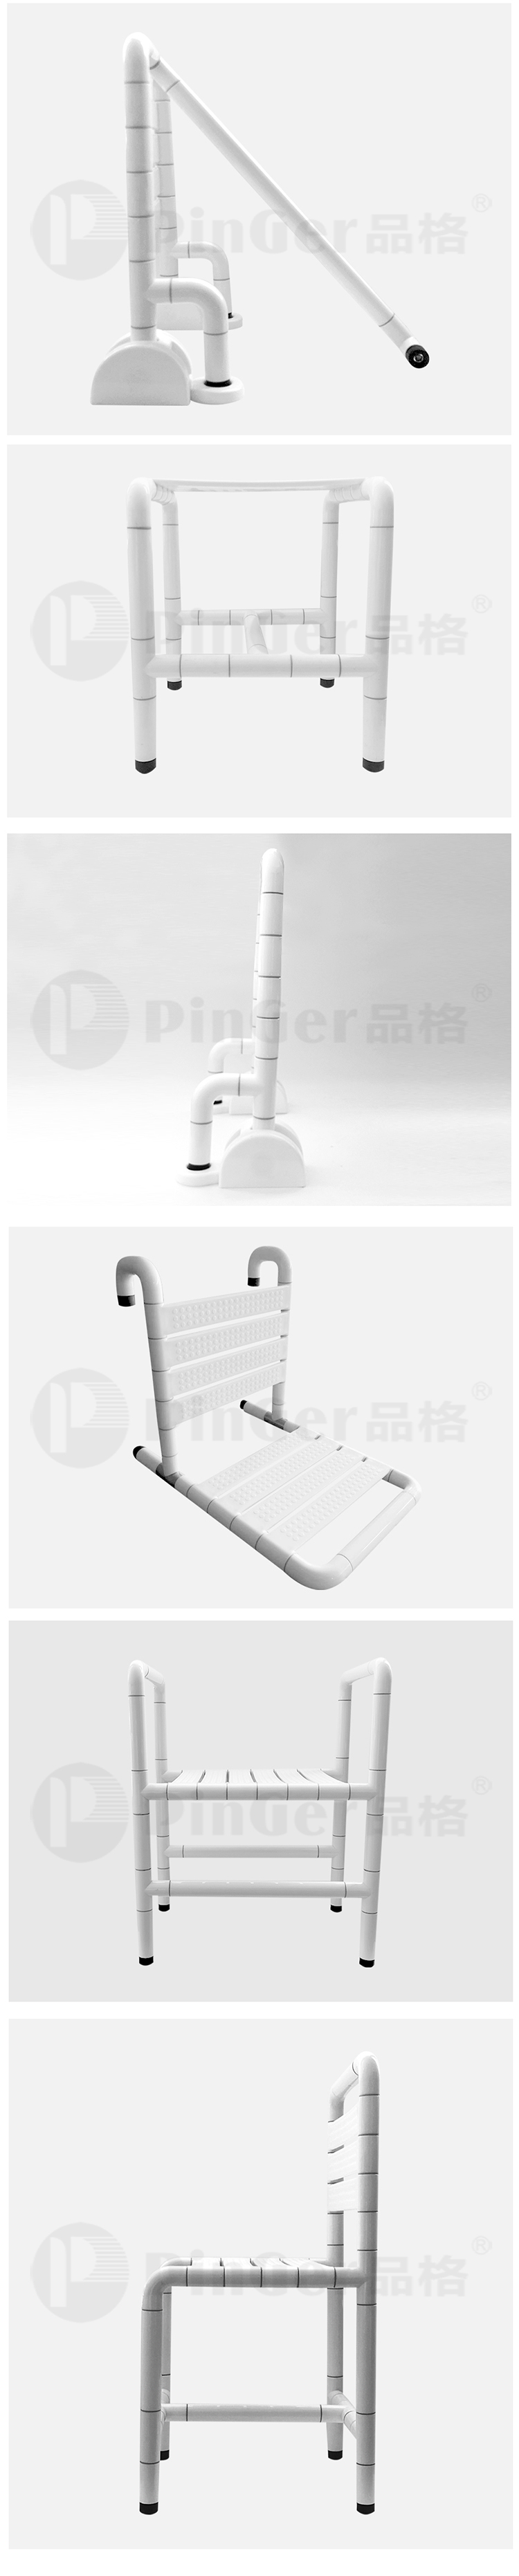 Ghế tắm nylon chống trượt Handicap